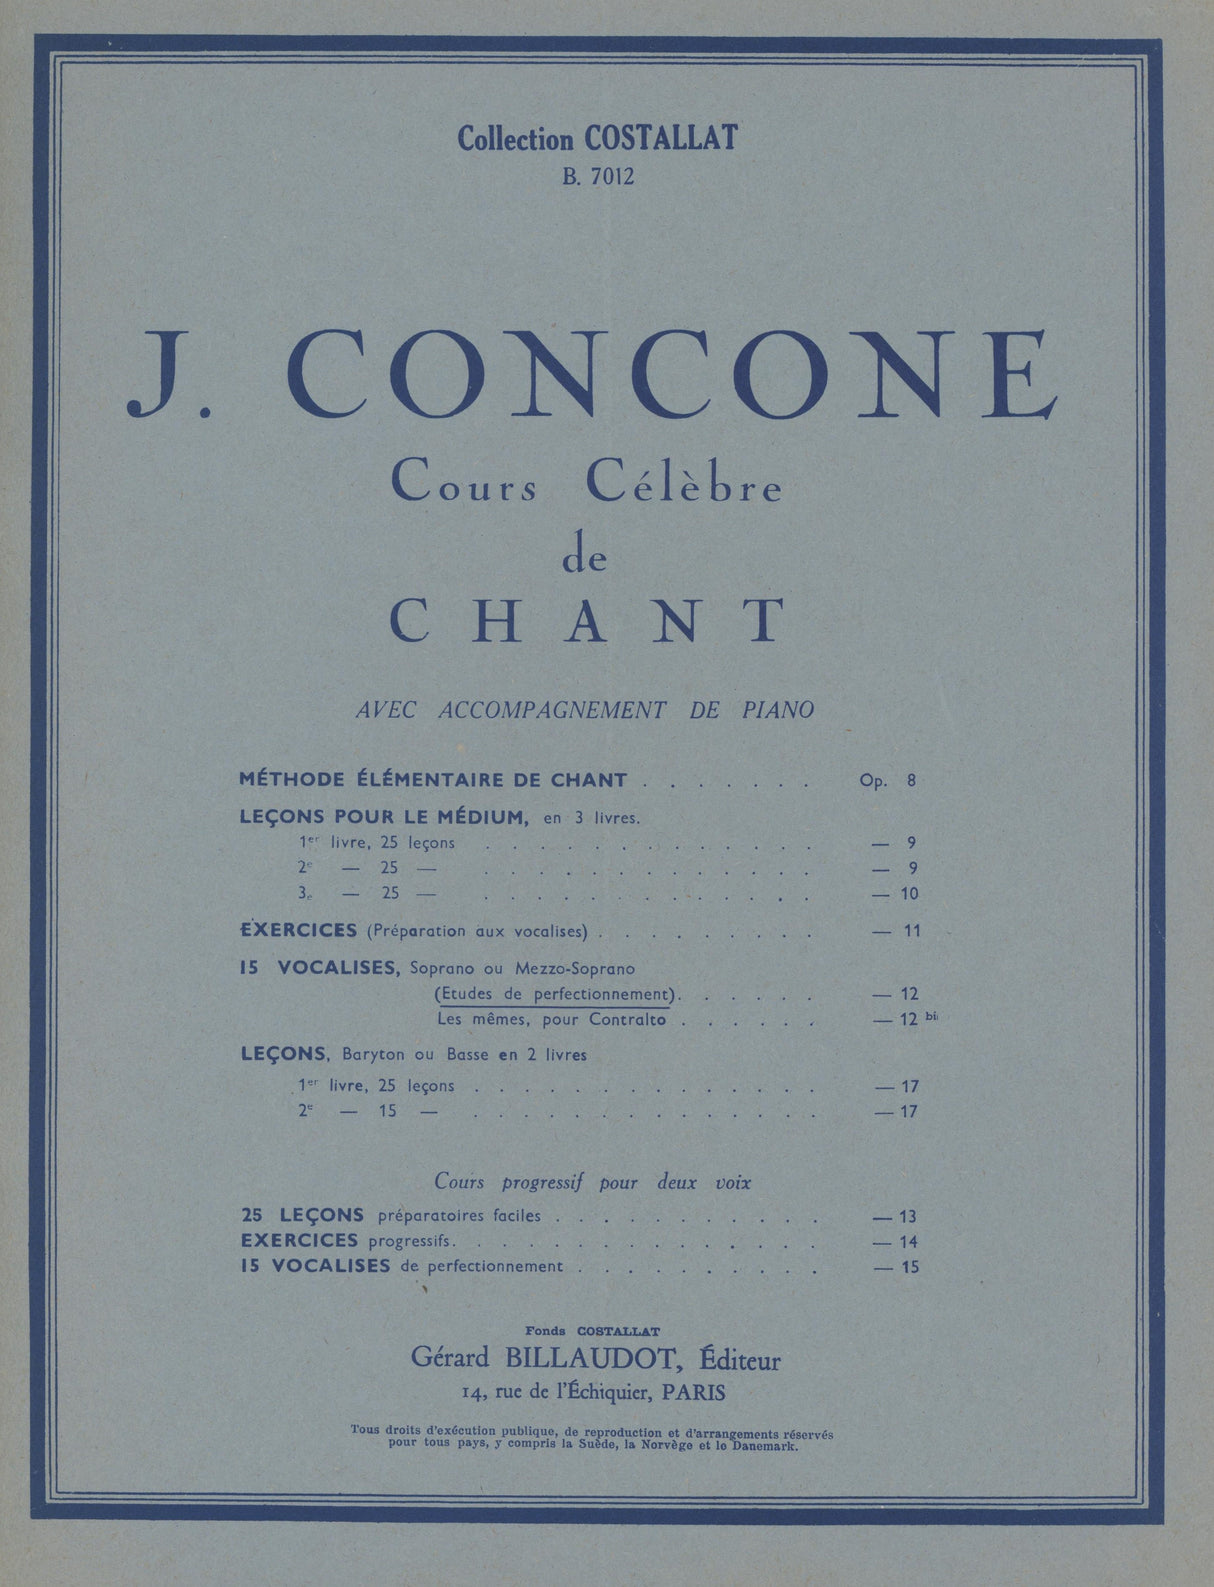 Concone: 15 vocalises (Études de perfectionnement), Op. 12